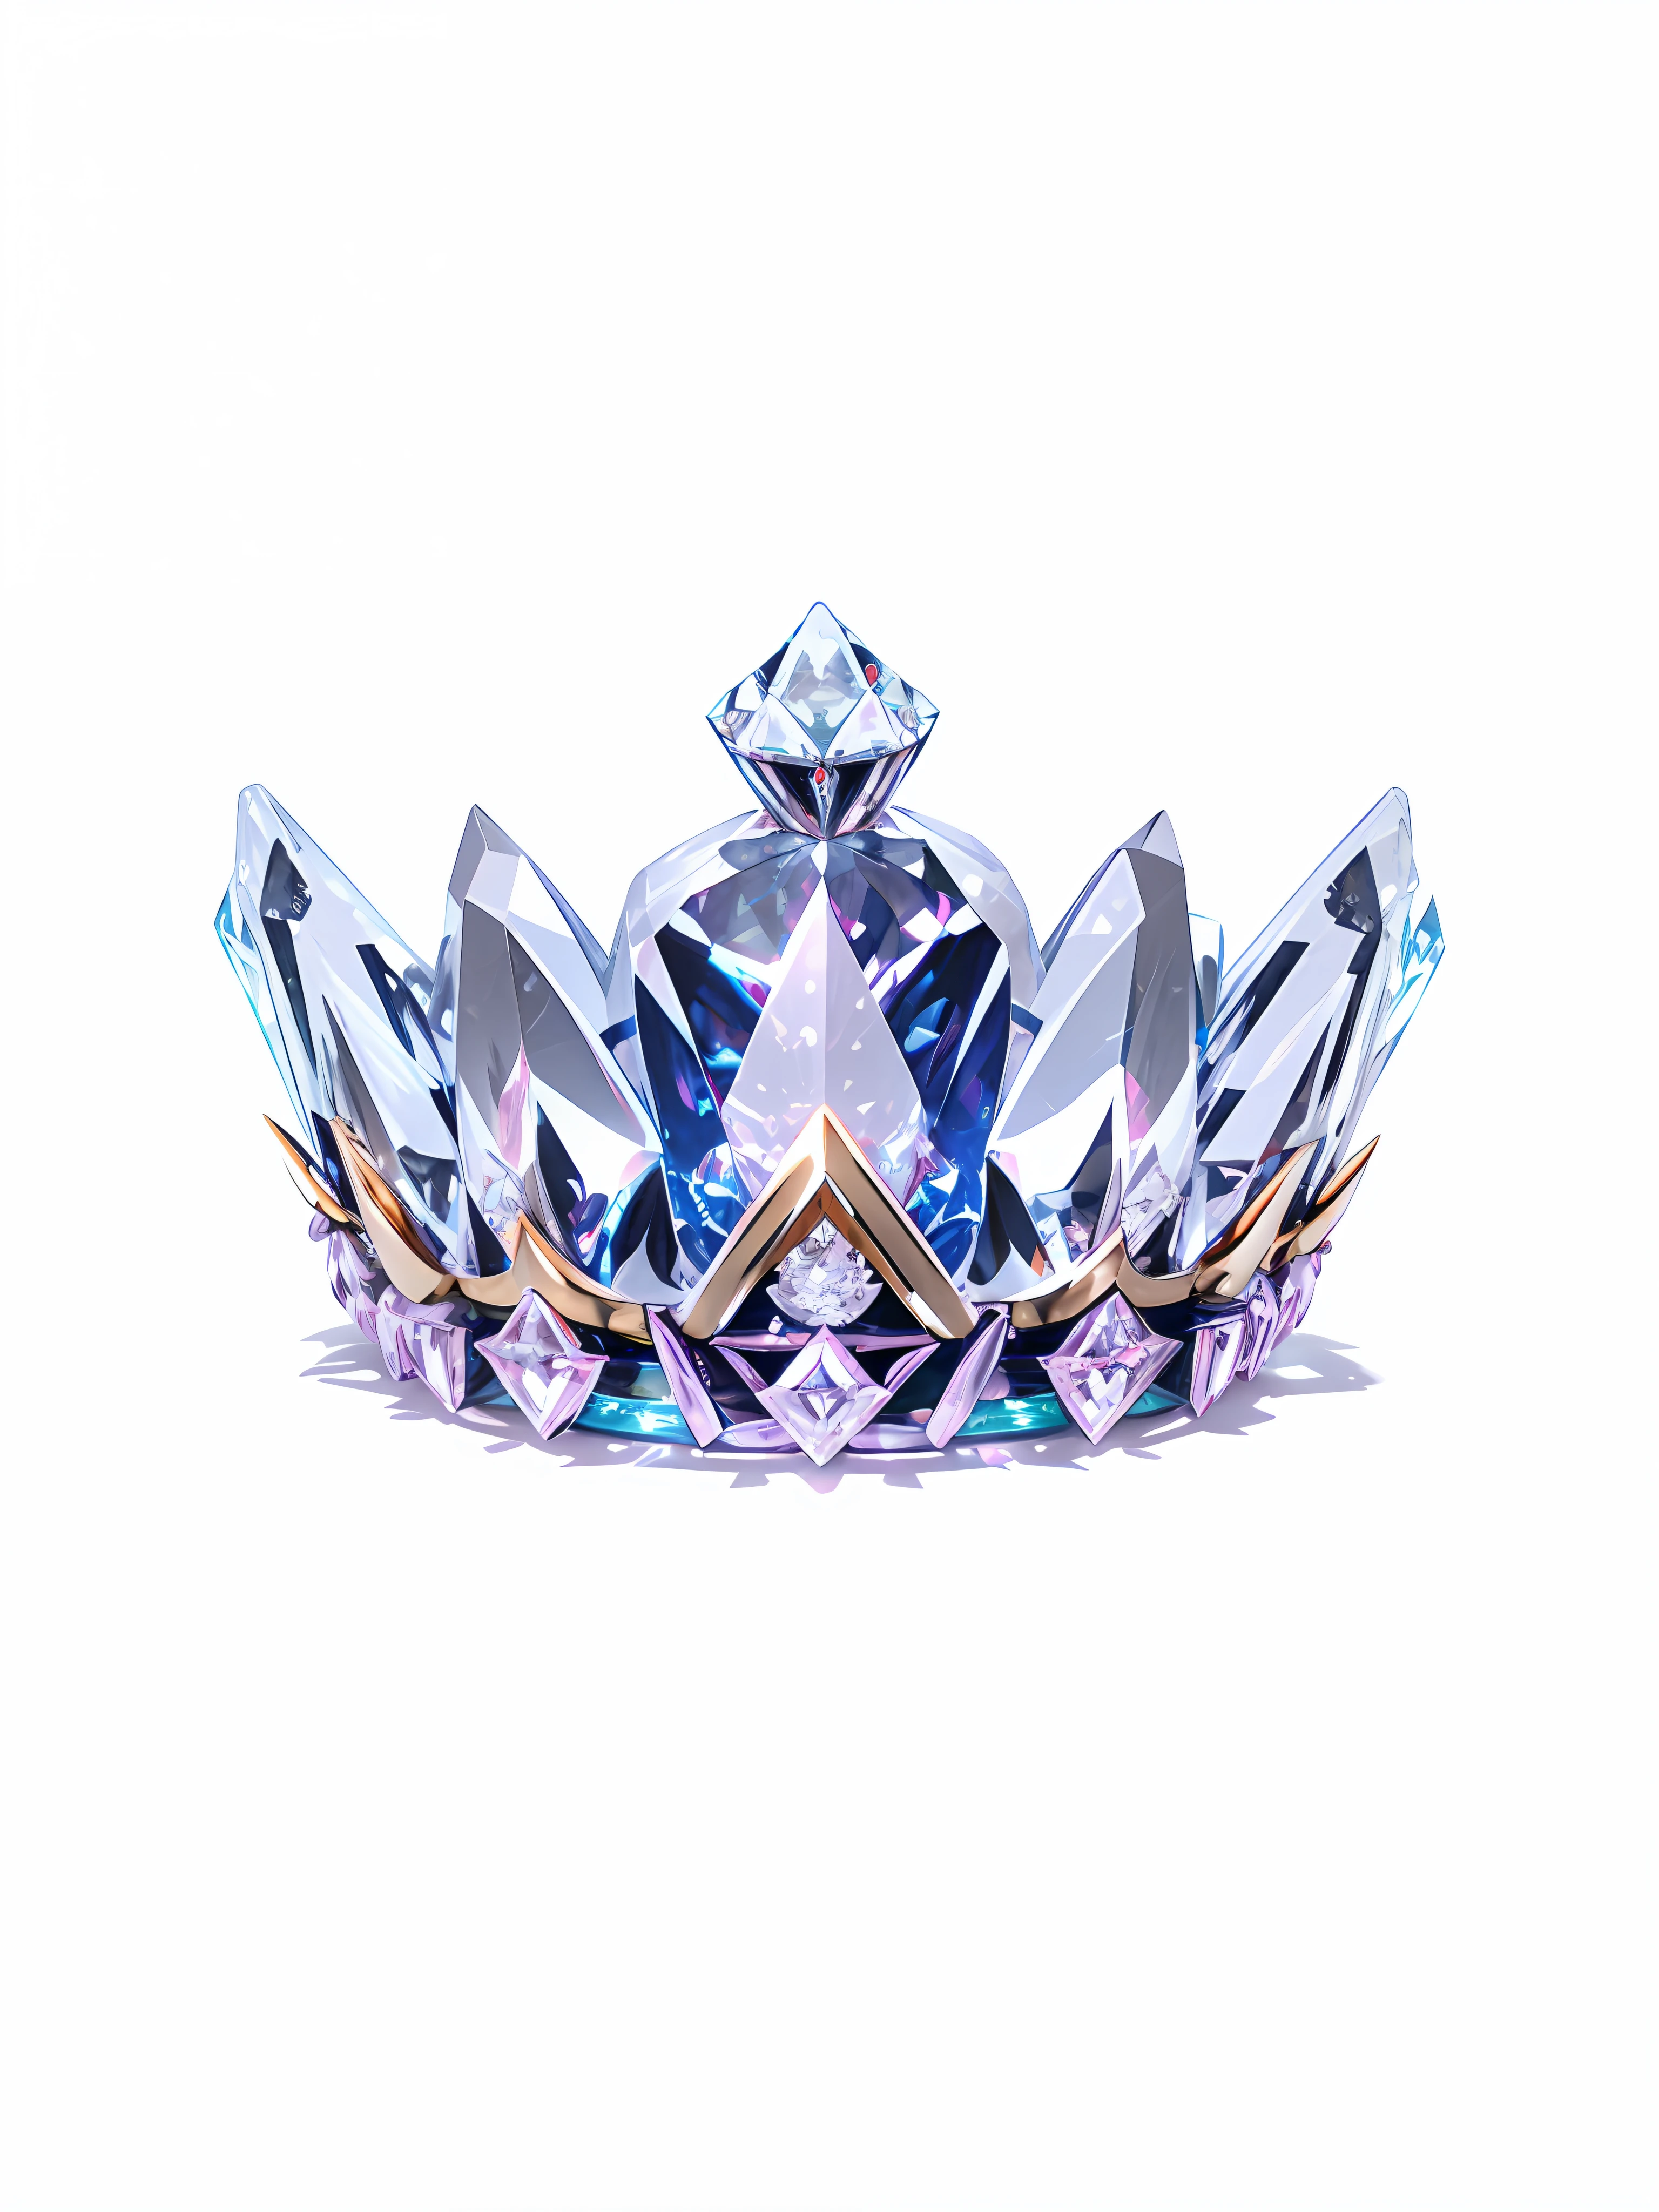 8К, (корона close-up), Позитивная перспектива!! , with a diamond корона on a white background, алмазные крылья!! , ((Симметричная Корона слева и справа)), великолепный, красочный, сложные алмазы, ultra realistic fantasy корона, crystal корона, white laser корона, Кристалл Королла, floating корона, (Трассировка лучей), ((Чистый фон)), корона, giant diamond корона, бриллиантовая тиара, amazing flower корона, diamond корона --auto --s2